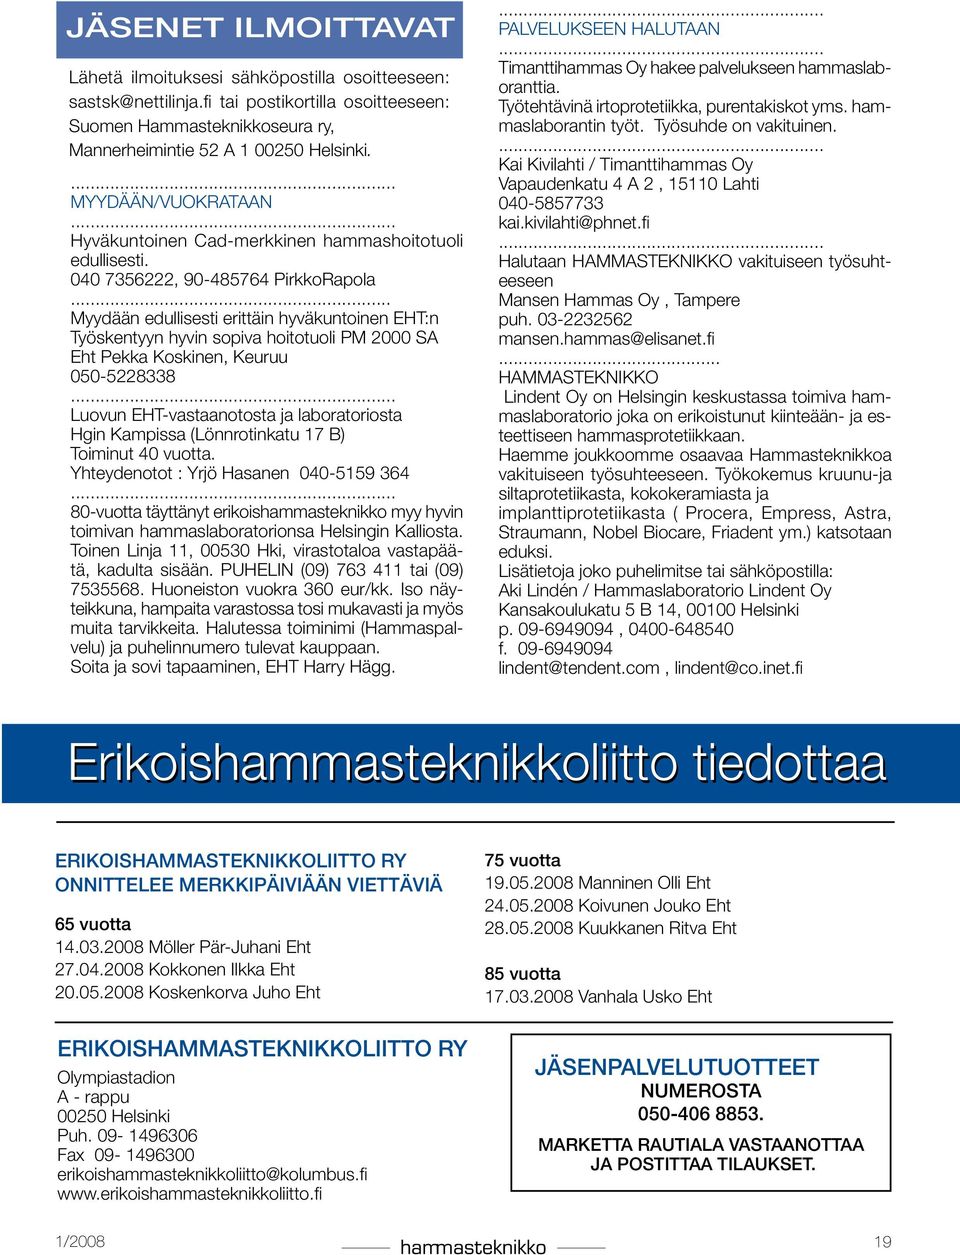 .. Myydään edullisesti erittäin hyväkuntoinen EHT:n Työskentyyn hyvin sopiva hoitotuoli PM 2000 SA Eht Pekka Koskinen, Keuruu 050-5228338.